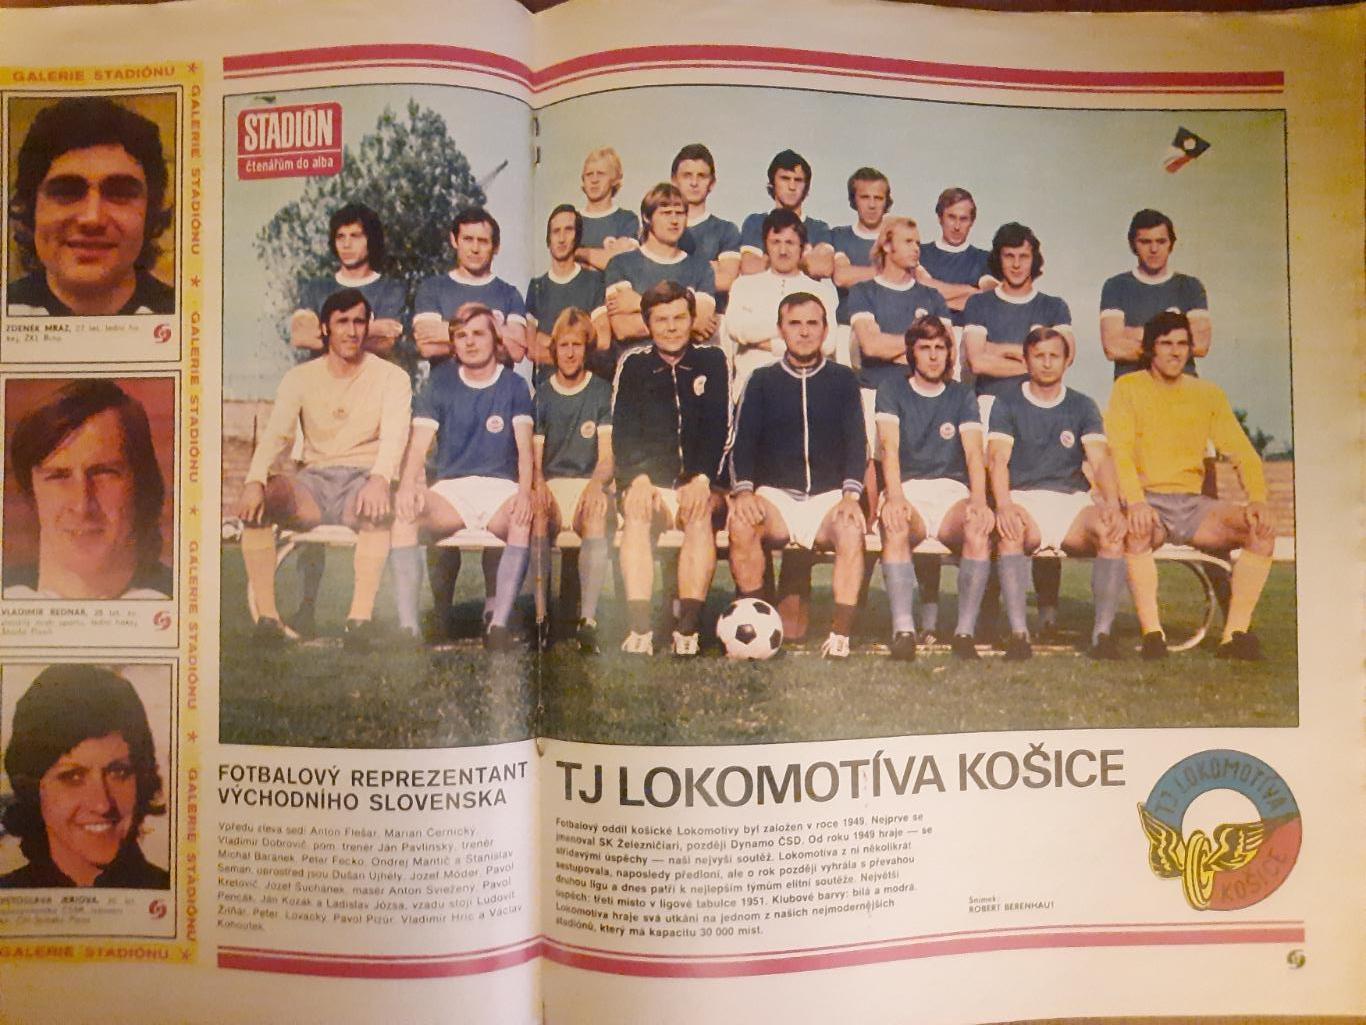 Стадион,Чехословакия #49(1223) 1976 1